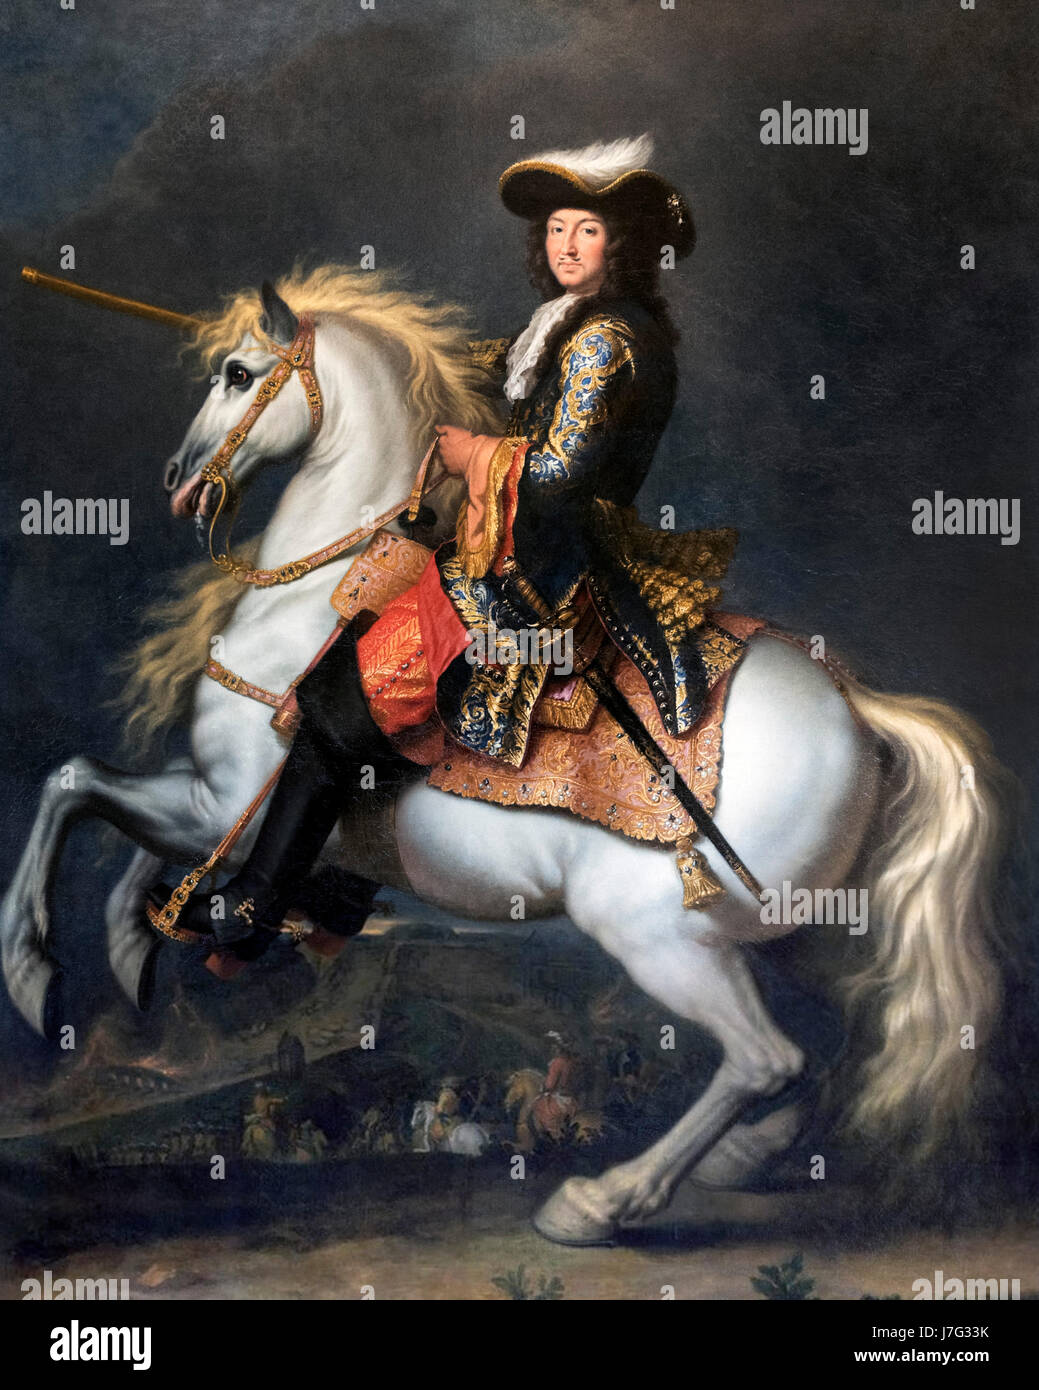 Portrait du roi Louis XIV de France (1638-1715) à cheval, Rene-Antoine Houasse, huile sur toile, 1674 Banque D'Images